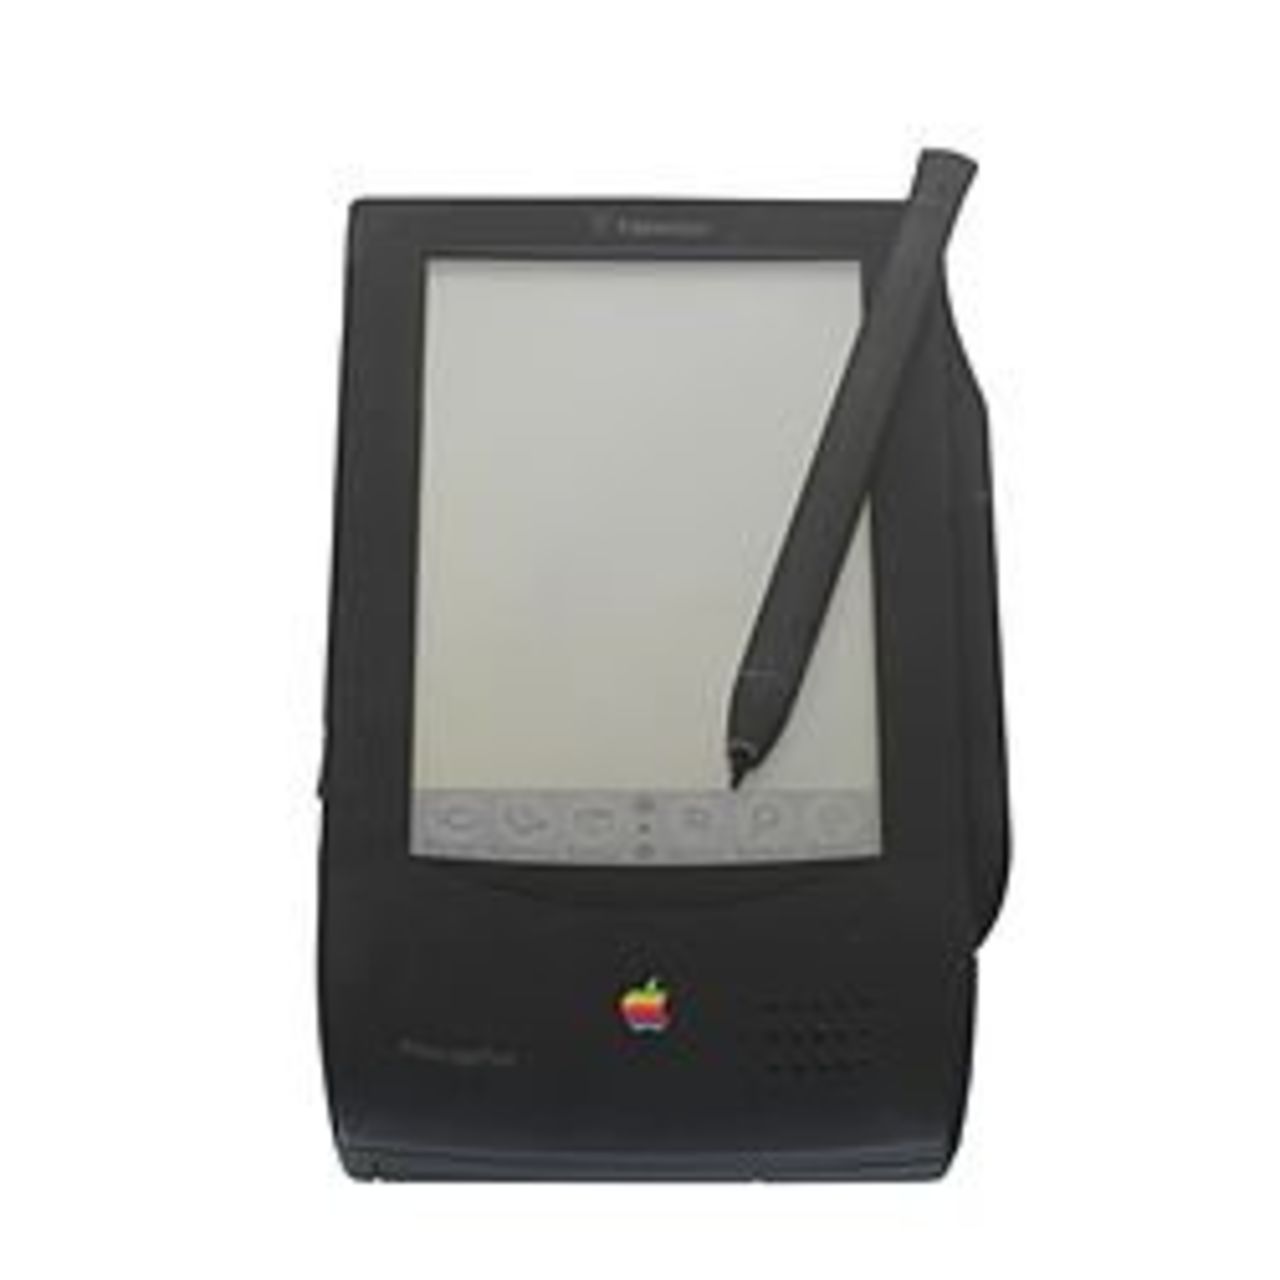  En 1993, Apple lanzó el Newton MessagePad, un dispositivo de mano de asistencia personal.